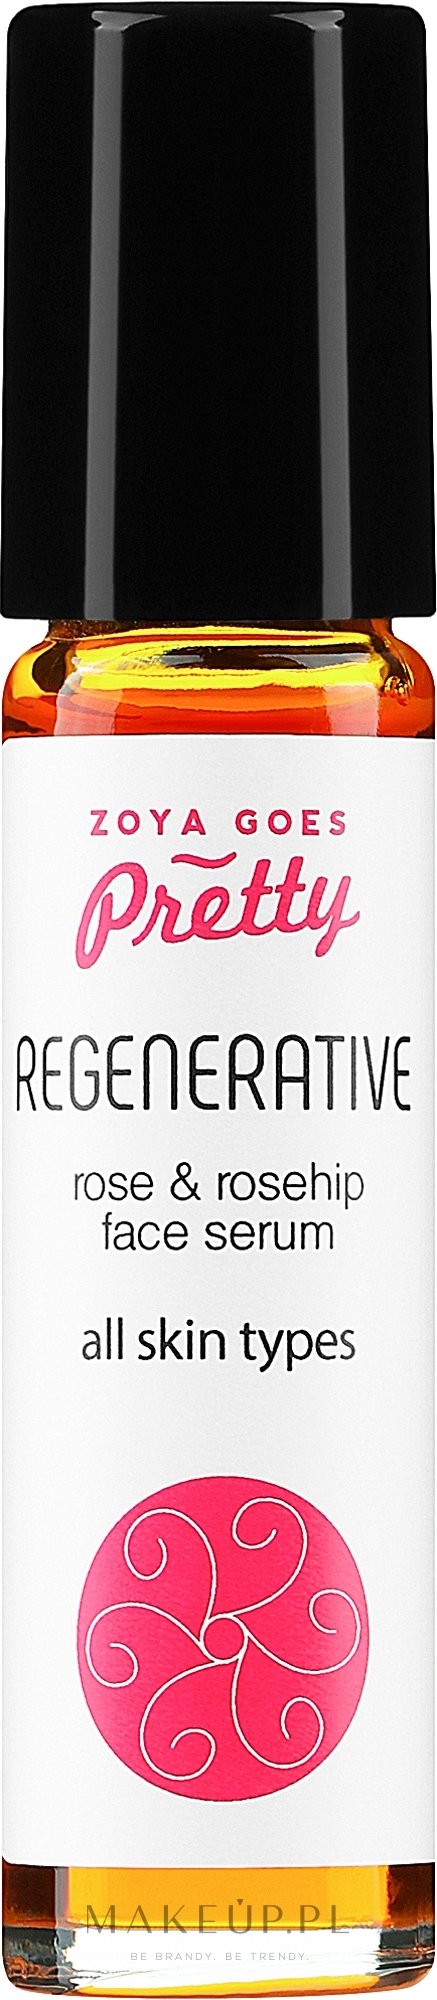 Rewitalizujące serum do twarzy z owocami dzikiej róży i różą - Zoya Goes Rosehip & Rose Face Serum Regenerative  — Zdjęcie 10 ml